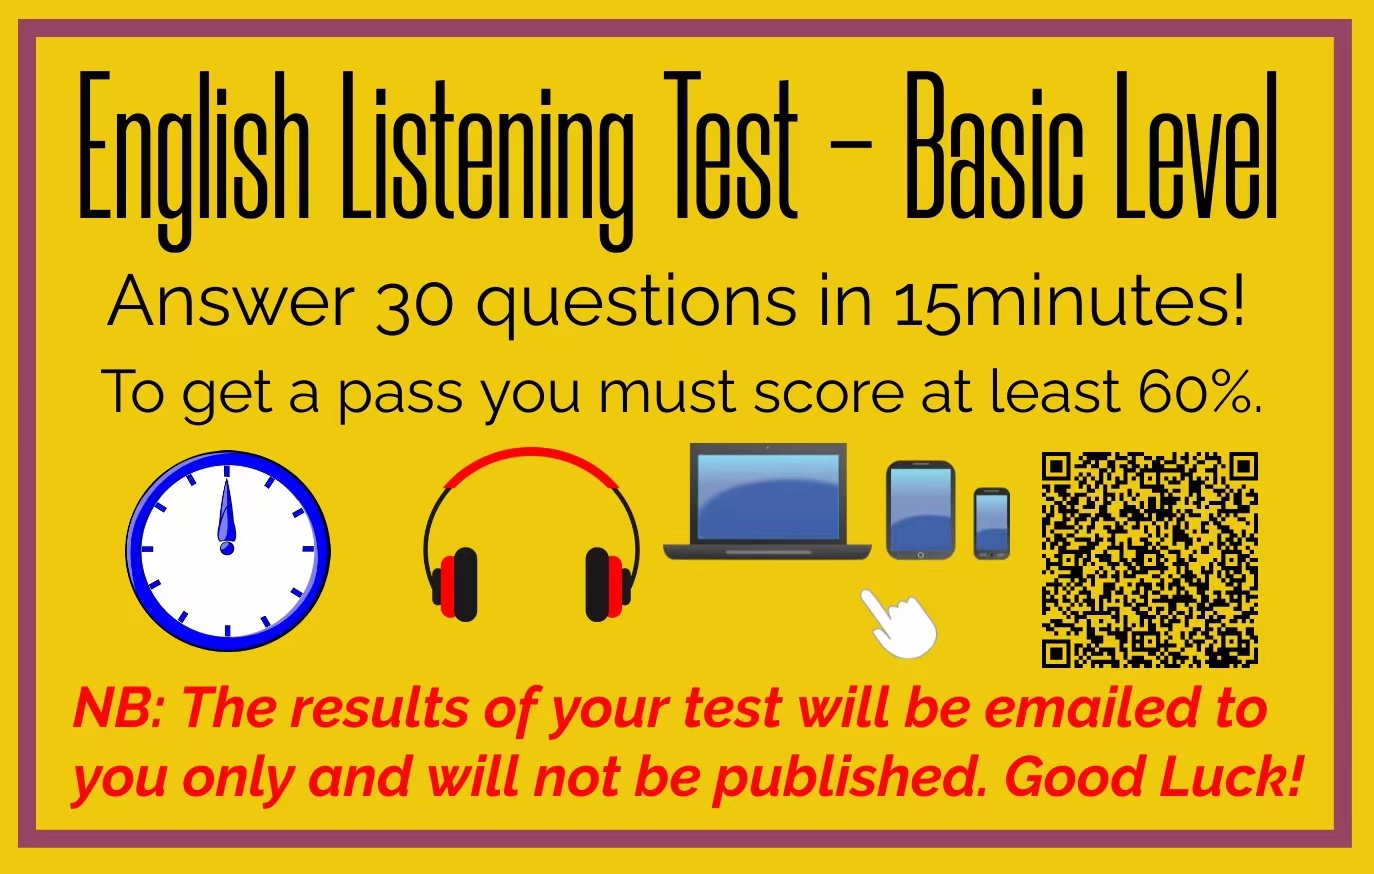 English Listening Test - Basic Level